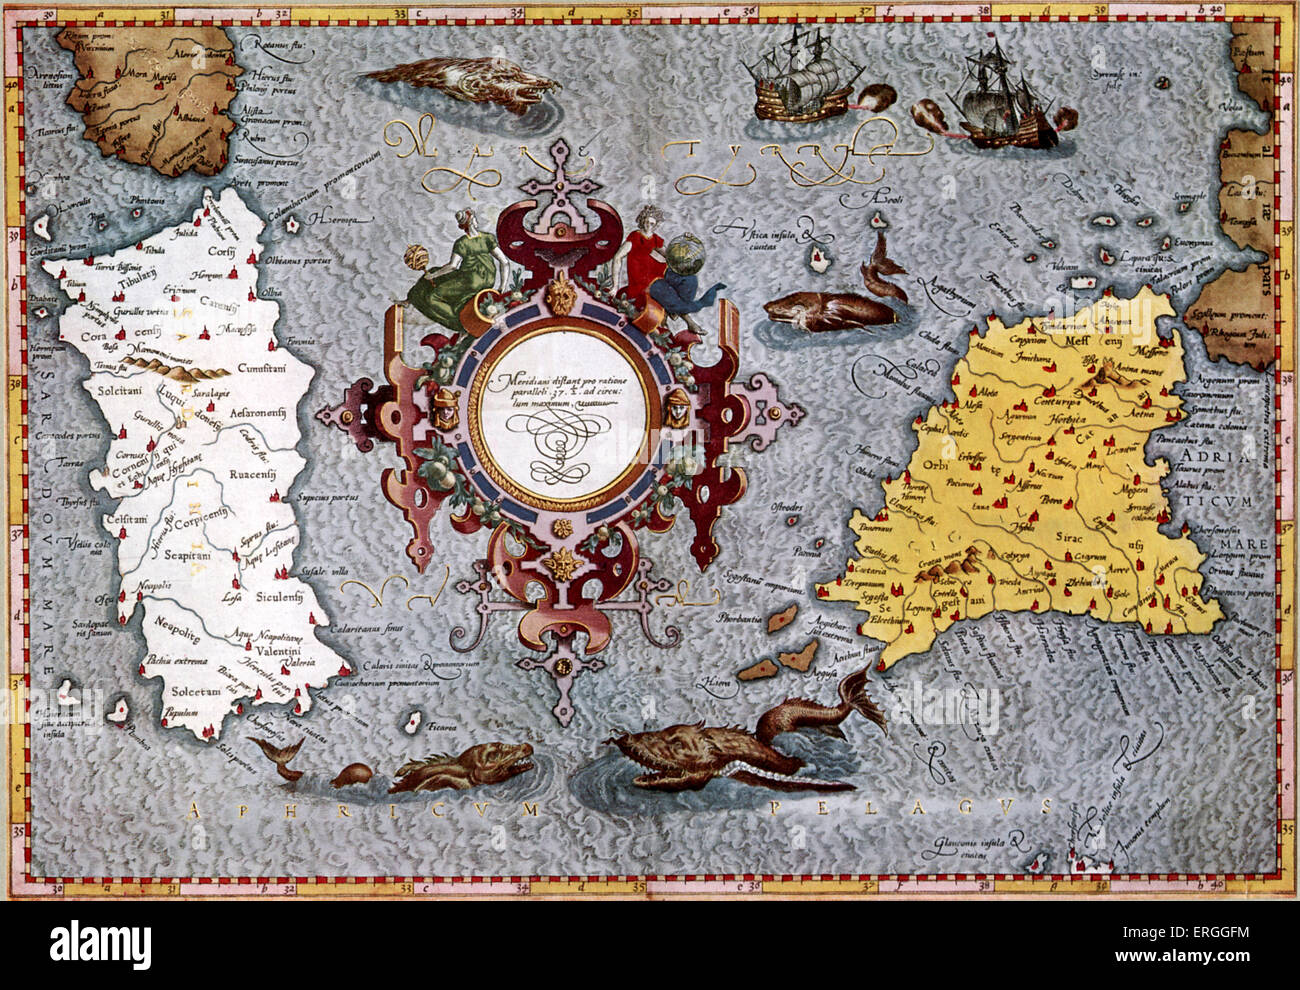 Karte von Sardinien und Sizilien von Mercator. Veröffentlicht in Ptolemäus 'Geographica", 1584, Köln. (Titel: Ptolemaei Alexandrini Stockfoto